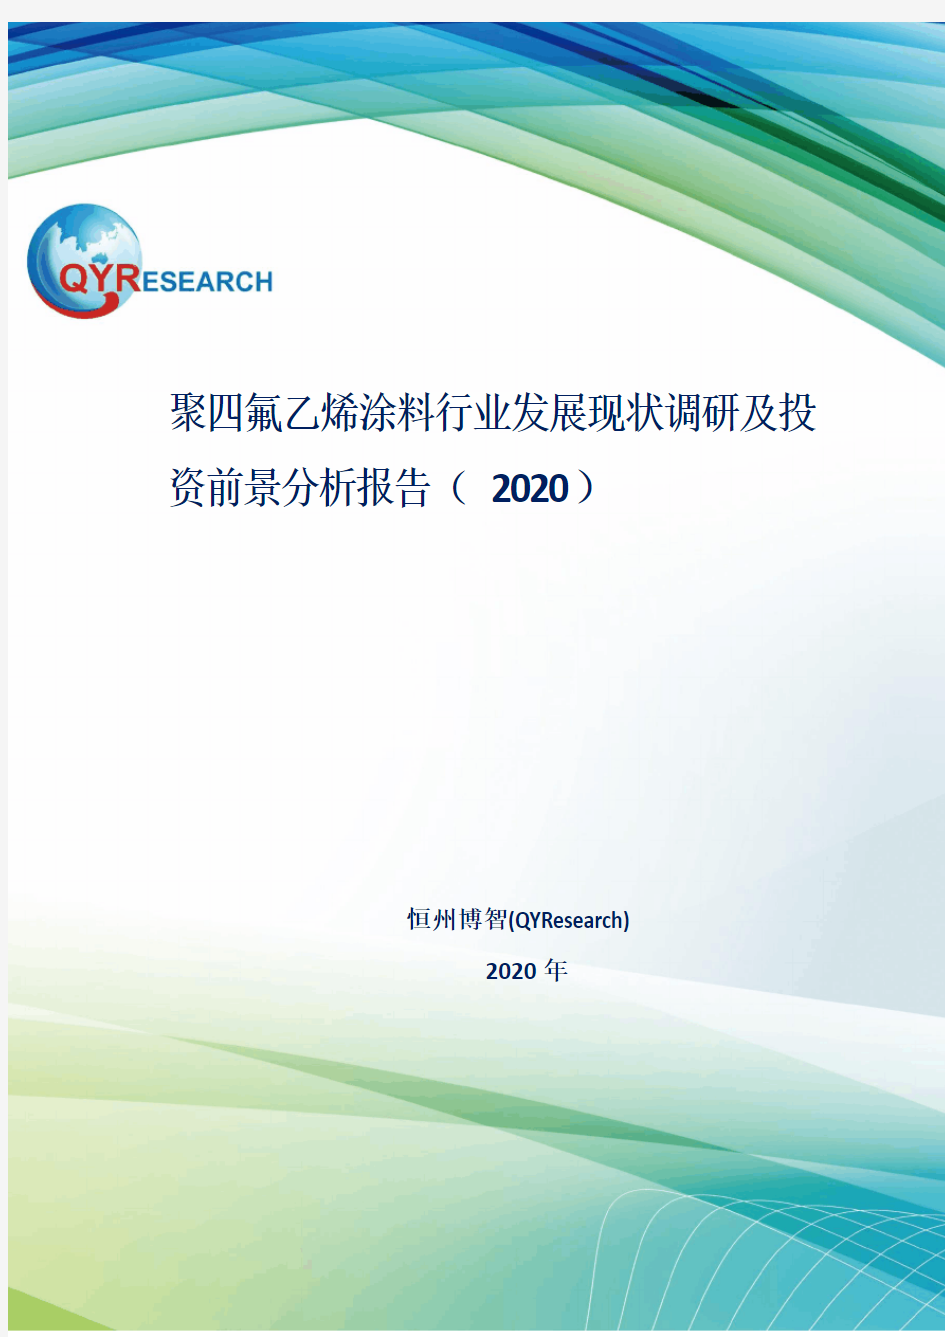 聚四氟乙烯涂料行业发展现状调研及投资前景分析报告(2020)